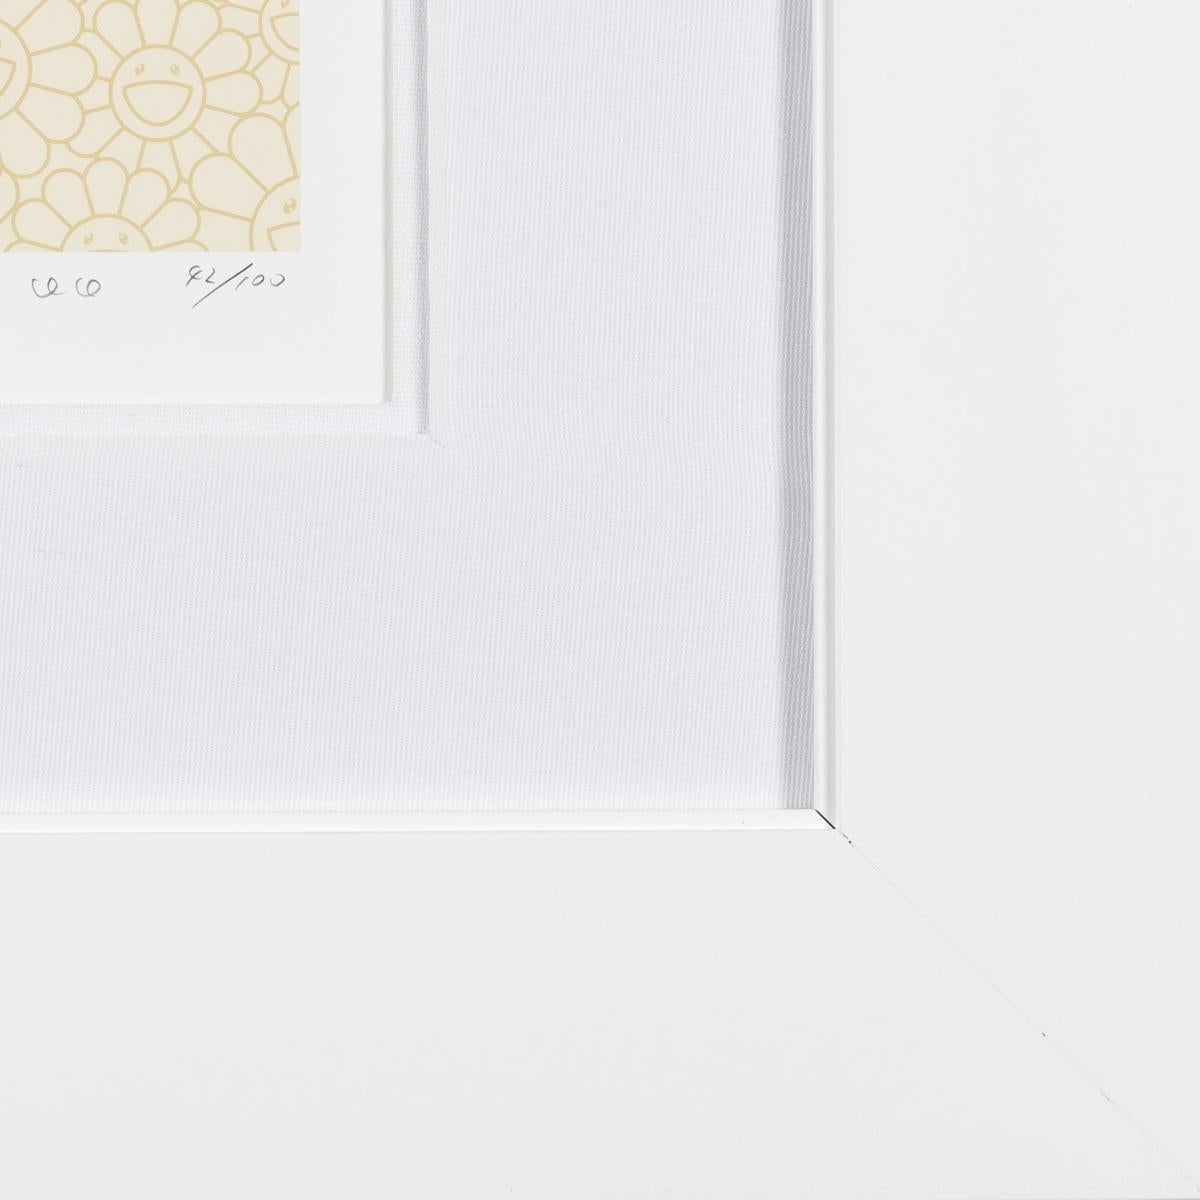 DOB 2020 Pearl Gold White est une lithographie artisanale sur papier, de format 14,5 x 14,5 pouces, signée et numérotée 42/100 en bas à droite. Encadré dans un cadre blanc contemporain.
